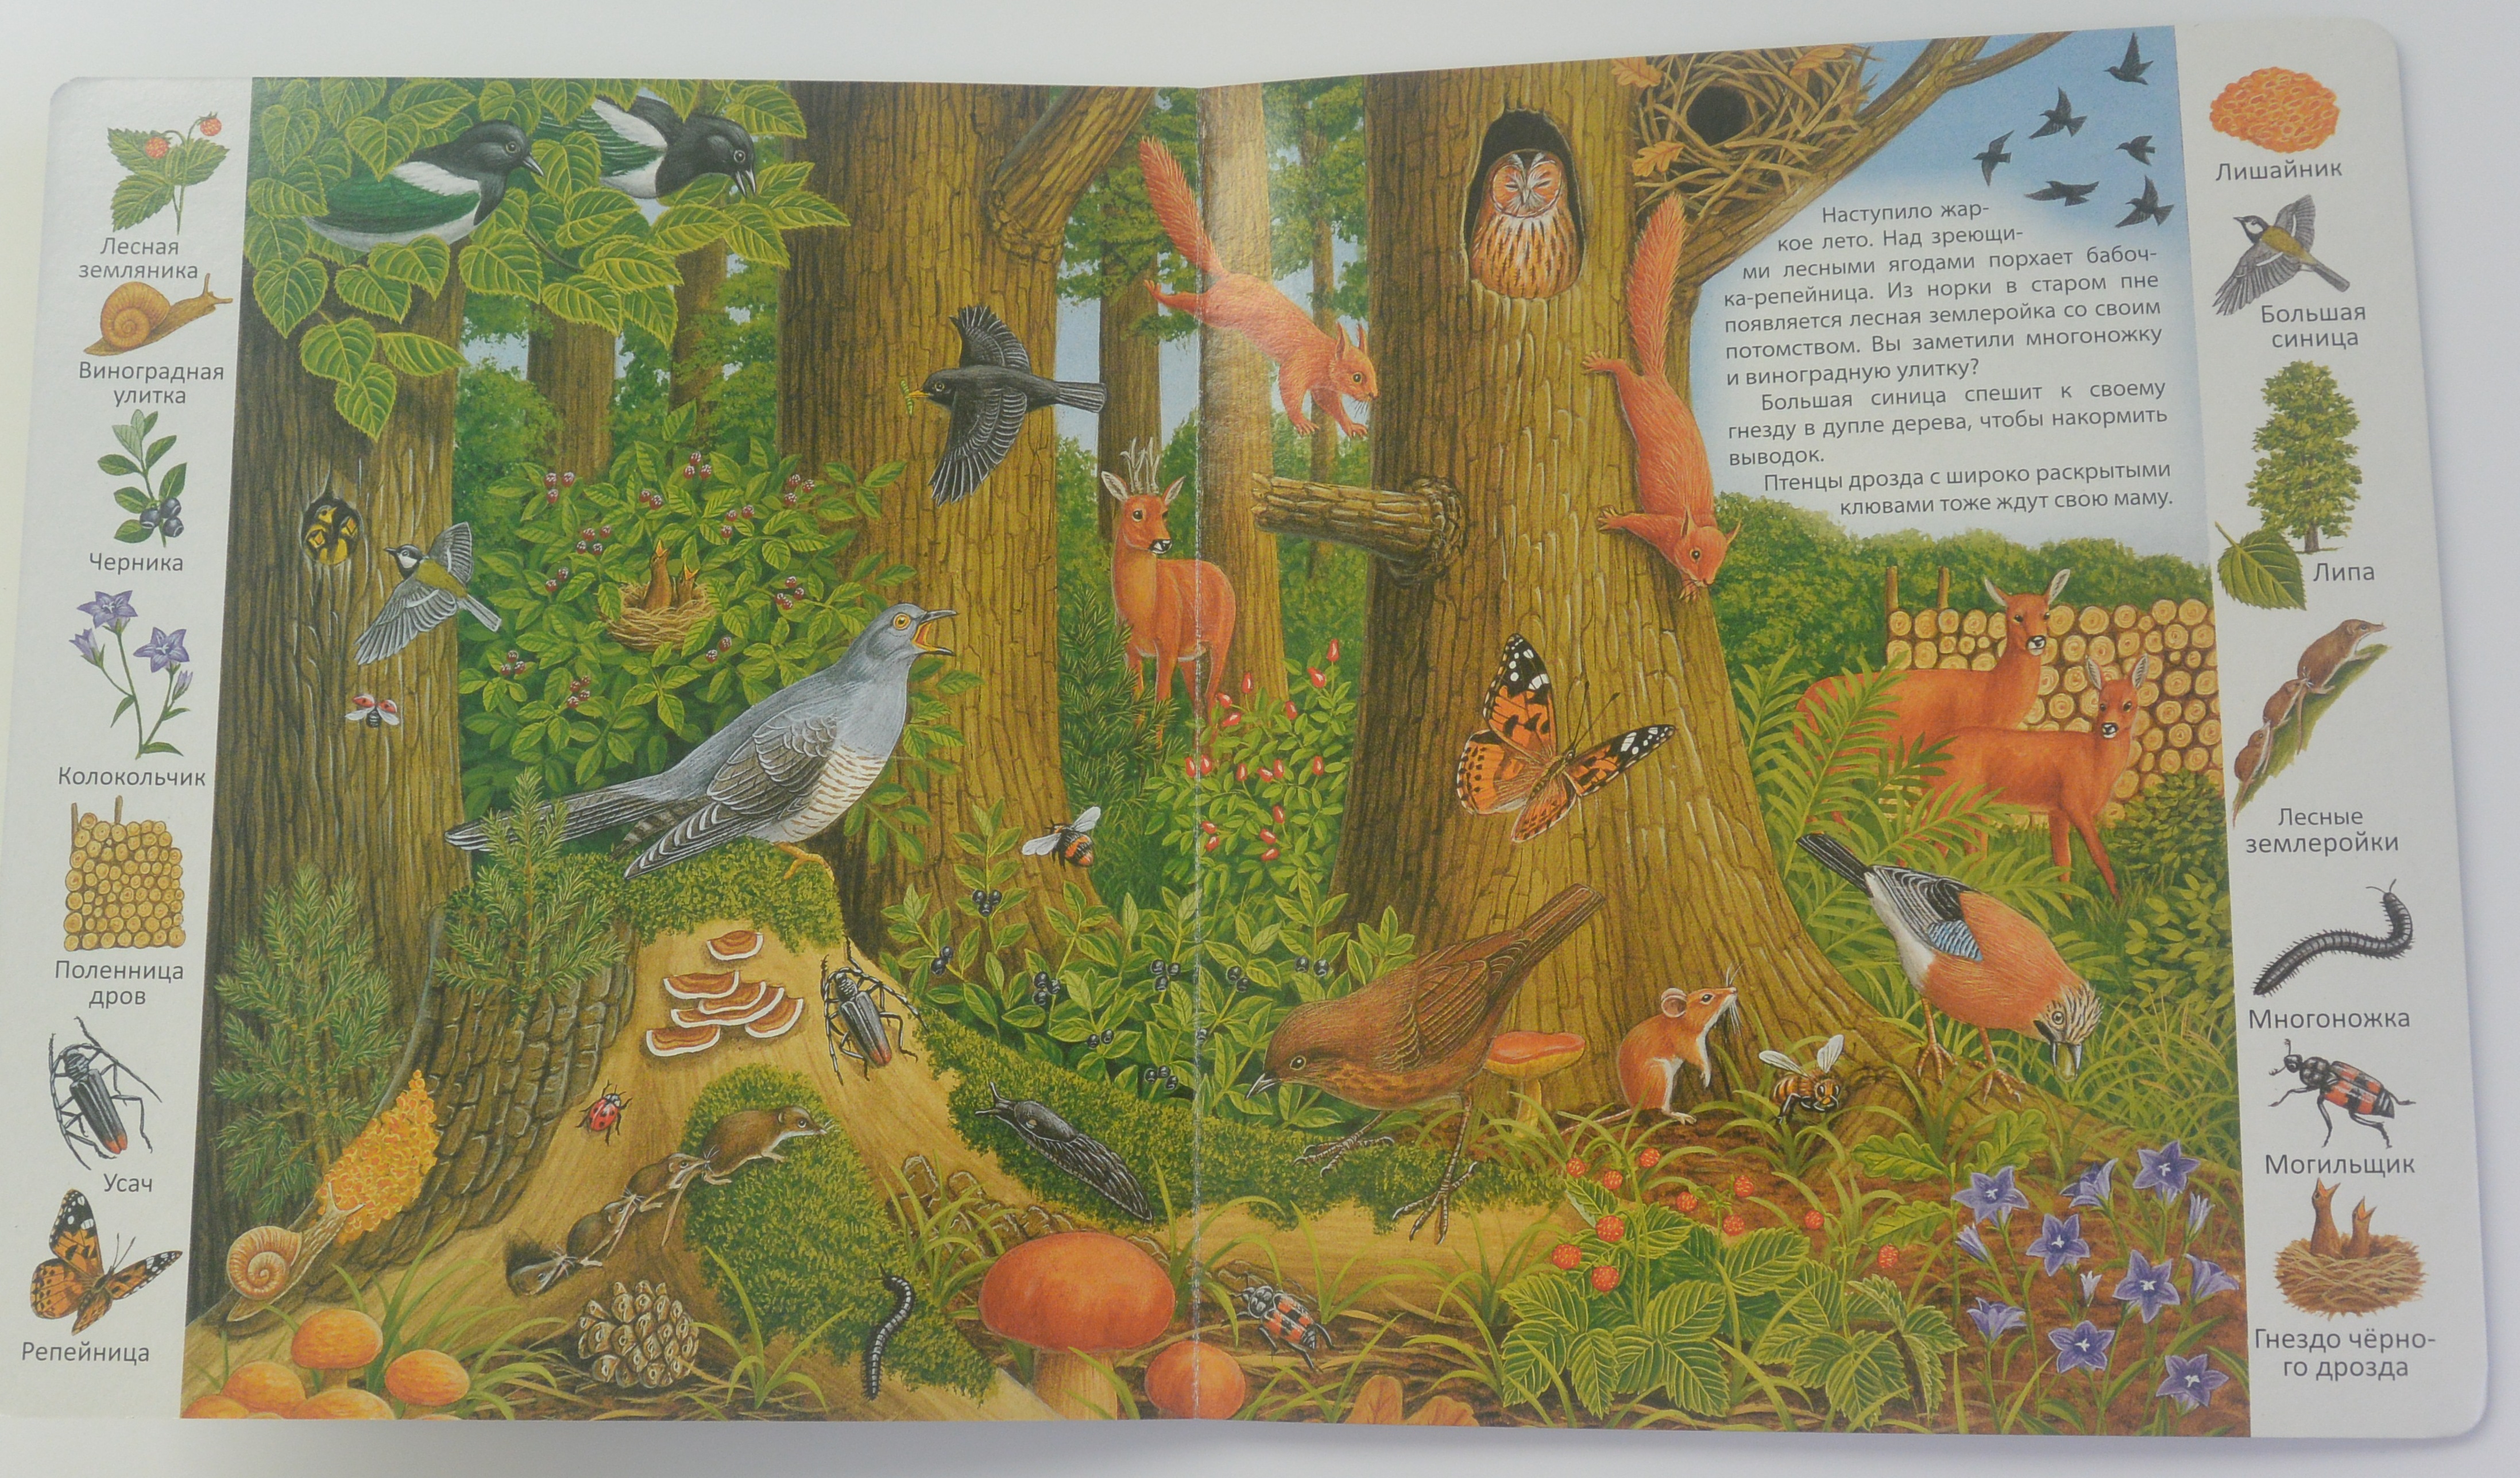 Произведение голос в лесу. Книги о лесе для детей. Детская книга про лес. Малыши. В лесу. Книжка в лесу.